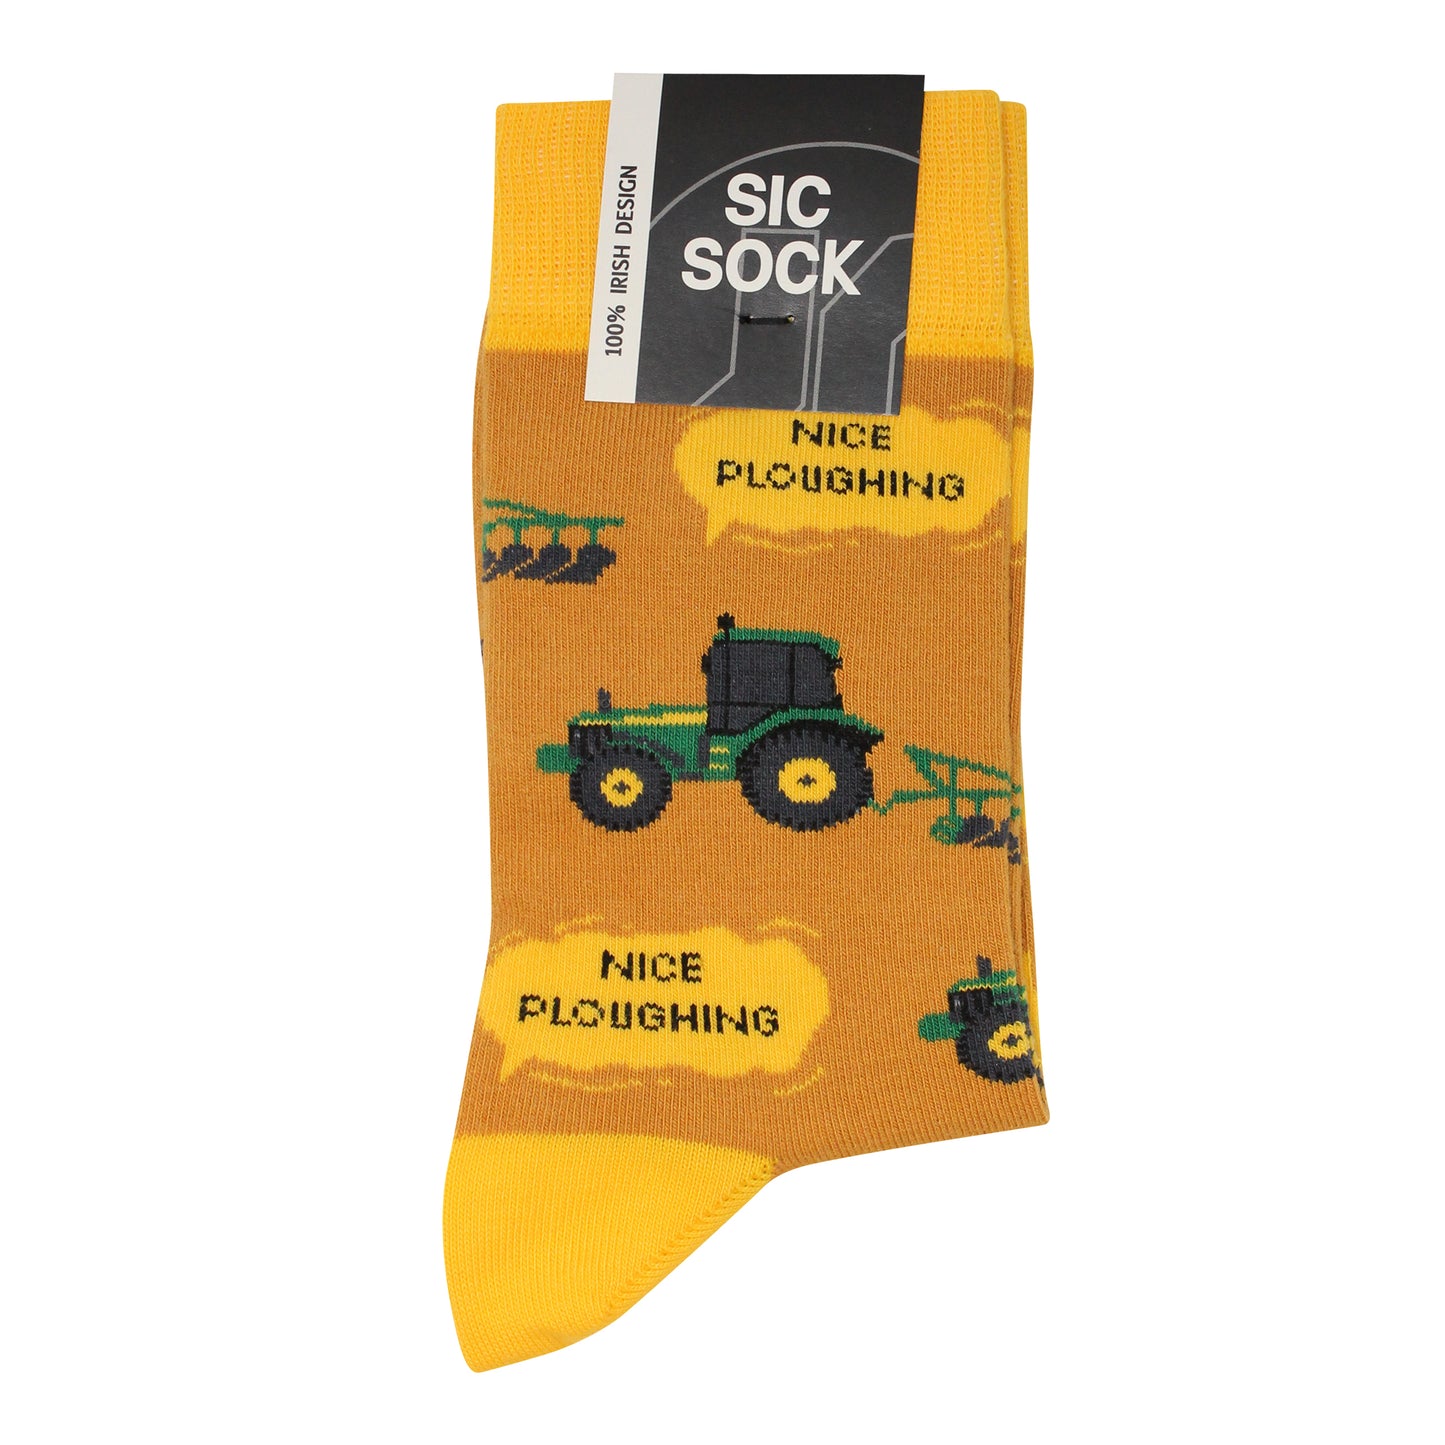 'Nice Ploughing' Socks